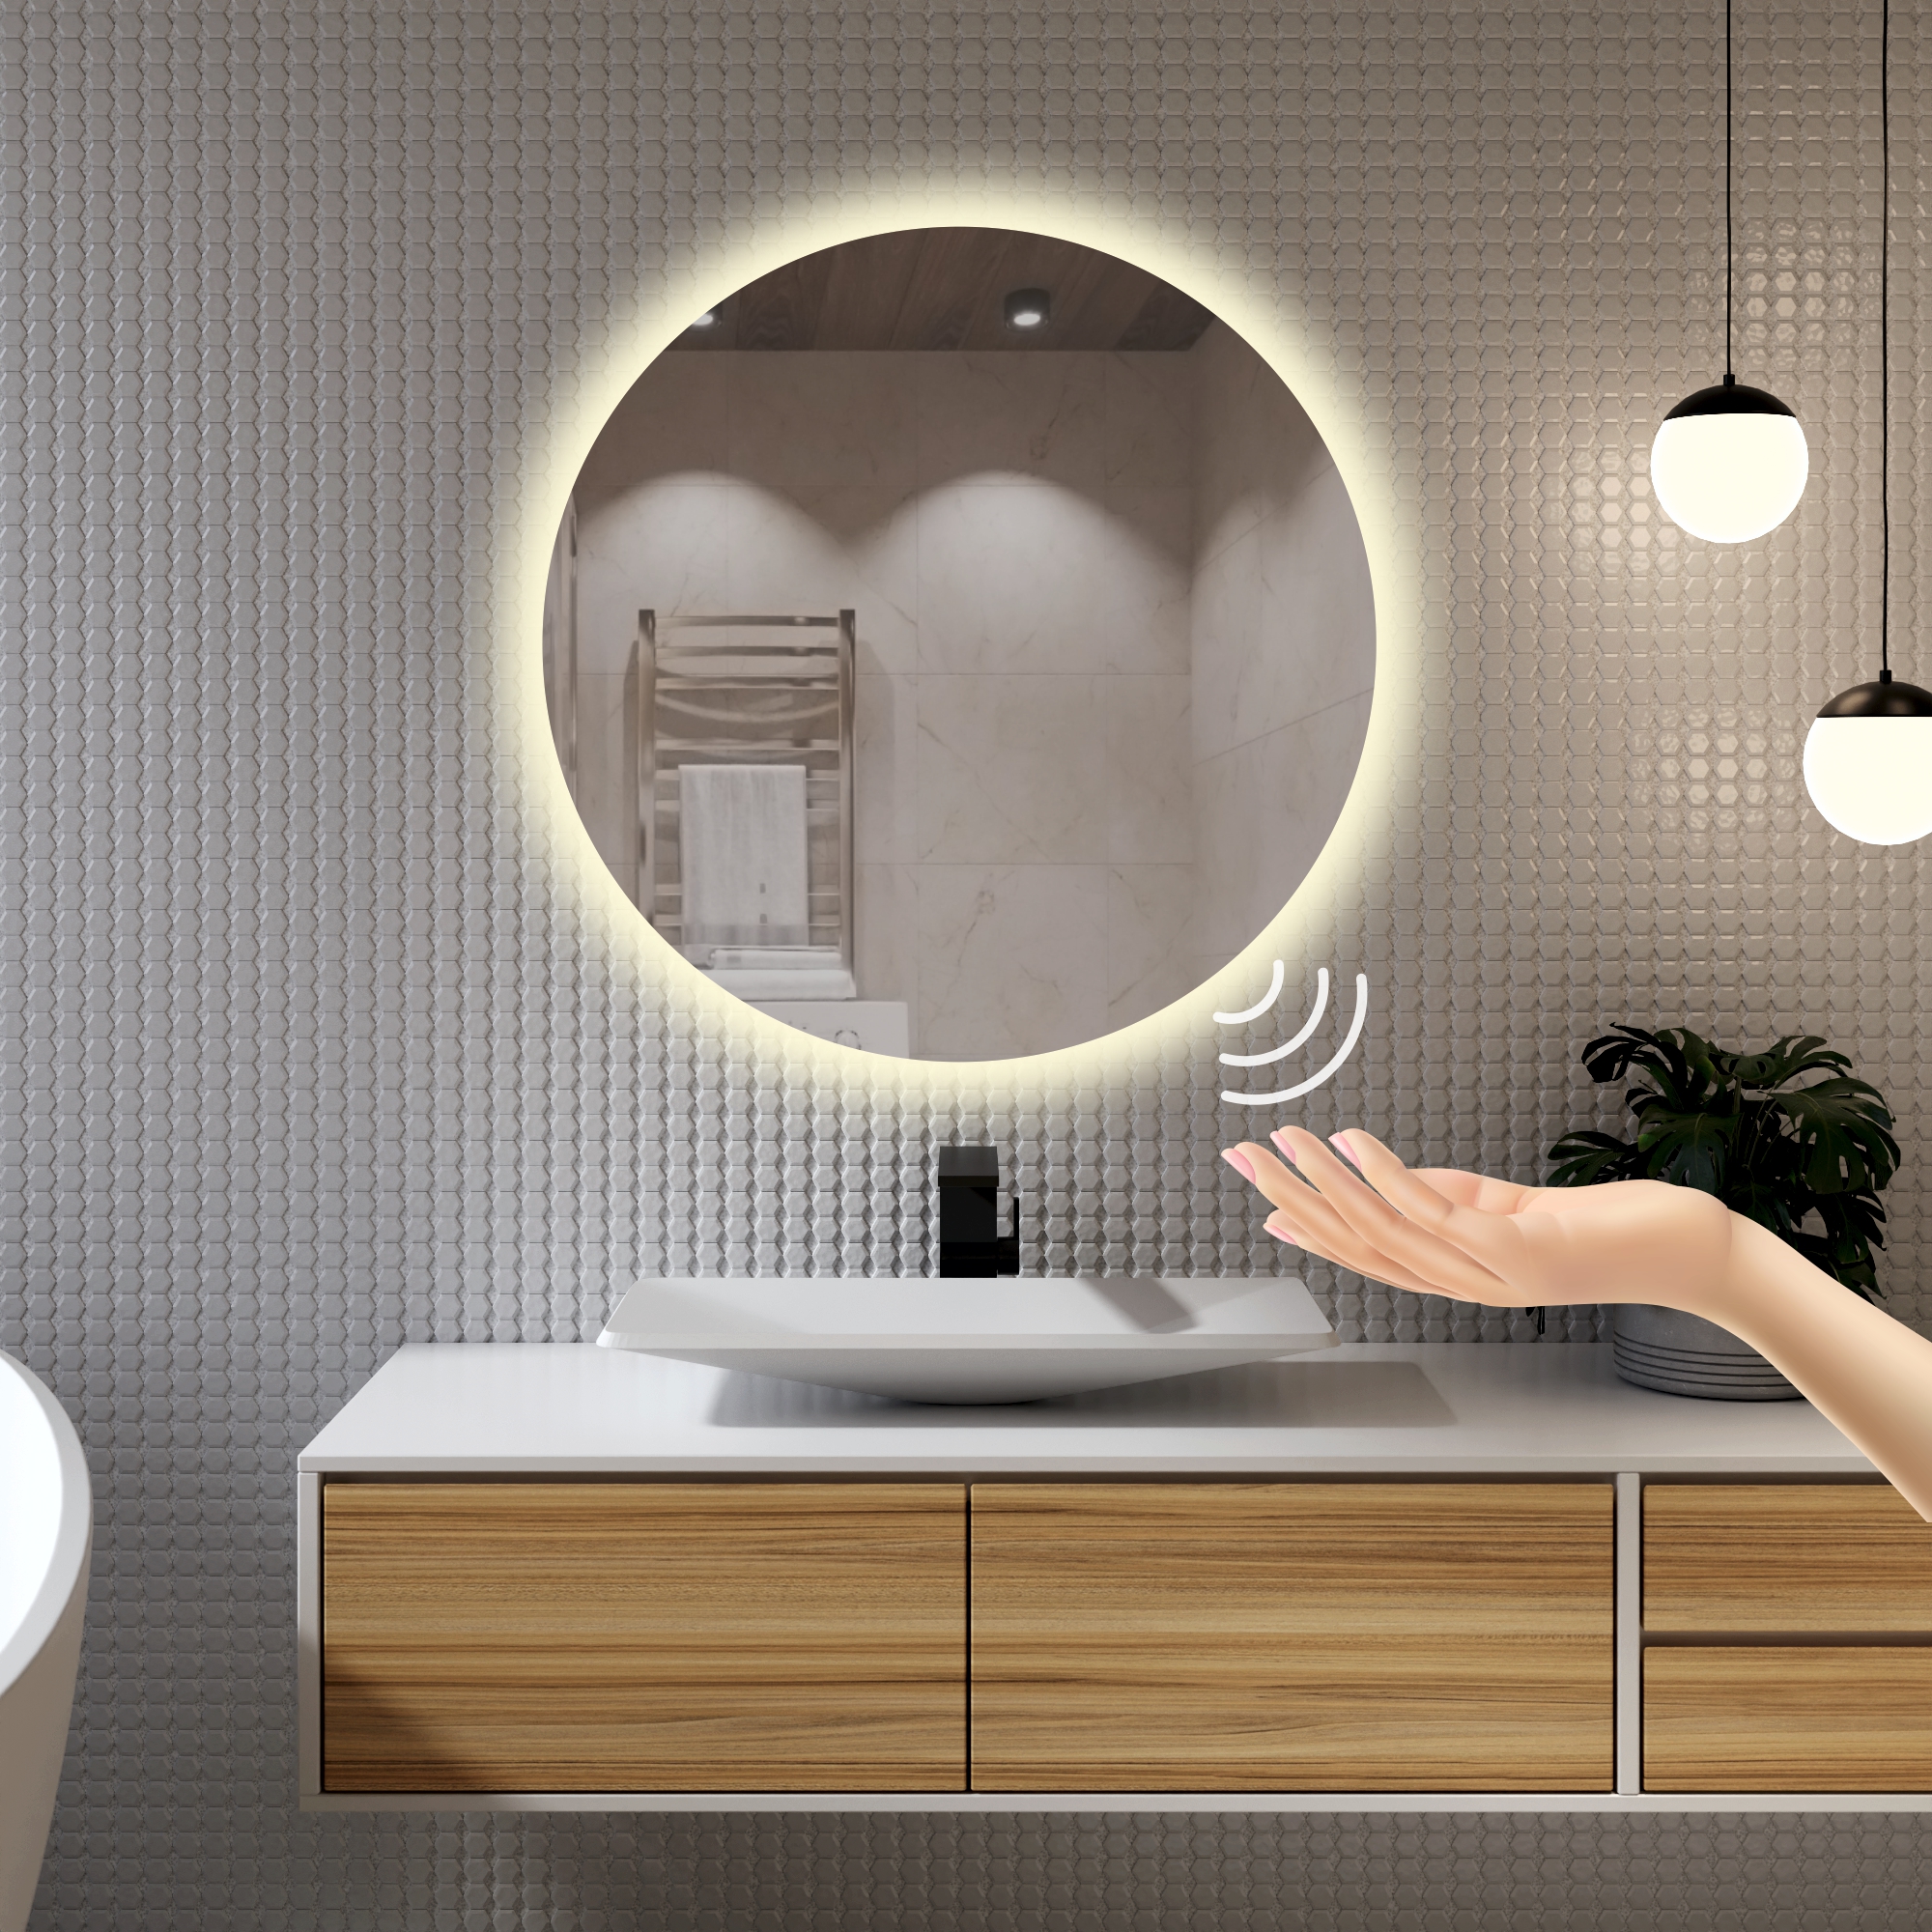 Зеркало для ванной Alfa Mirrors с дневной подсветкой 4200К круглое 60см, арт. Na-6Vzd